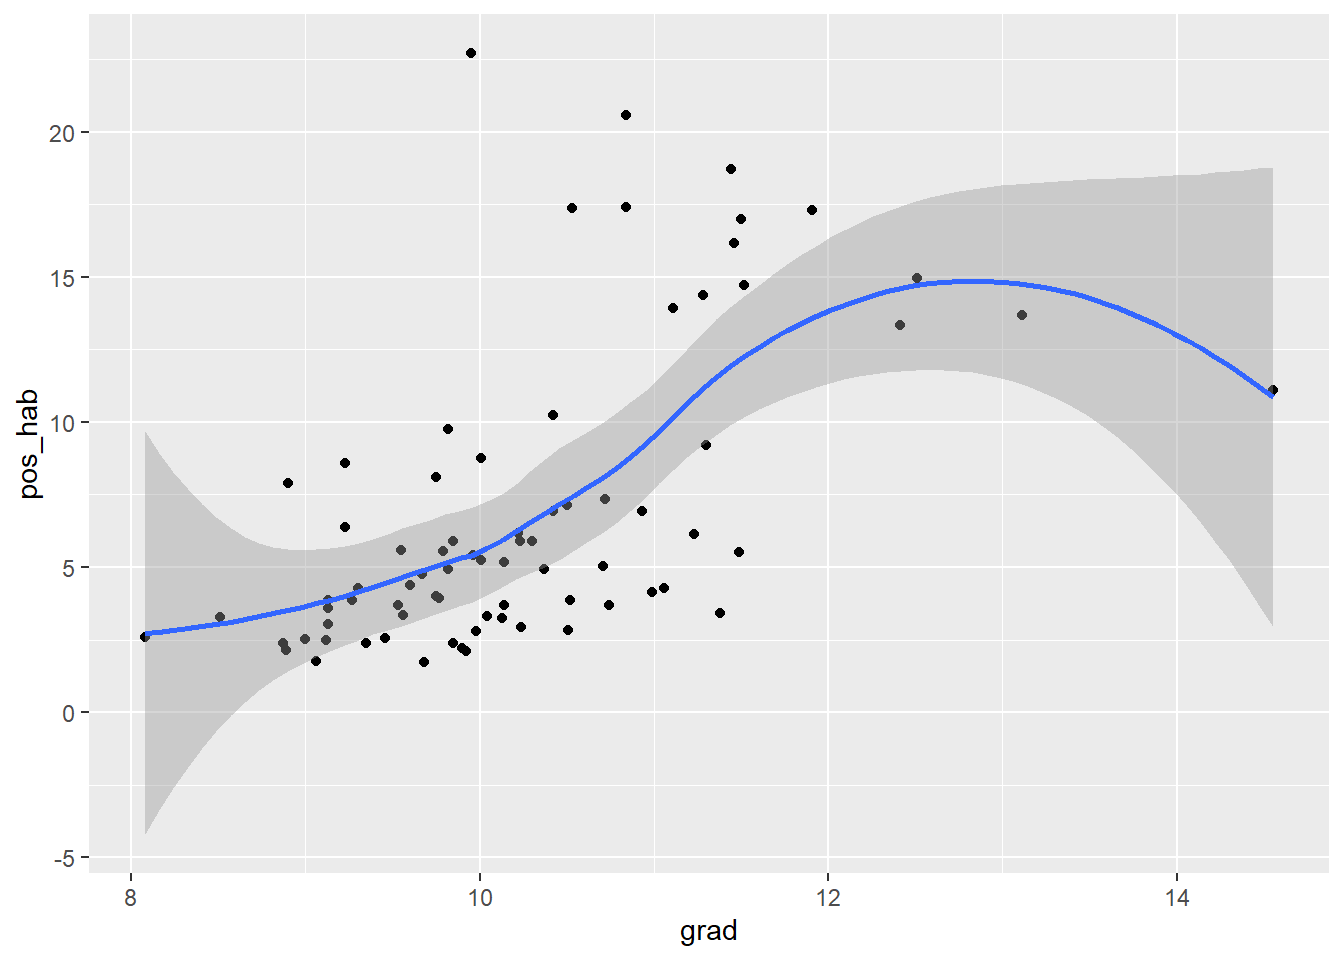 Muestra la relación entre el número promedio de grados cursados (grad) y los casos positivos (pos_hab) en la región de Zona Metropolitana del Valle de México.Este gráfico añade una linea de ajuste de color azul que muestra la tendencia general.